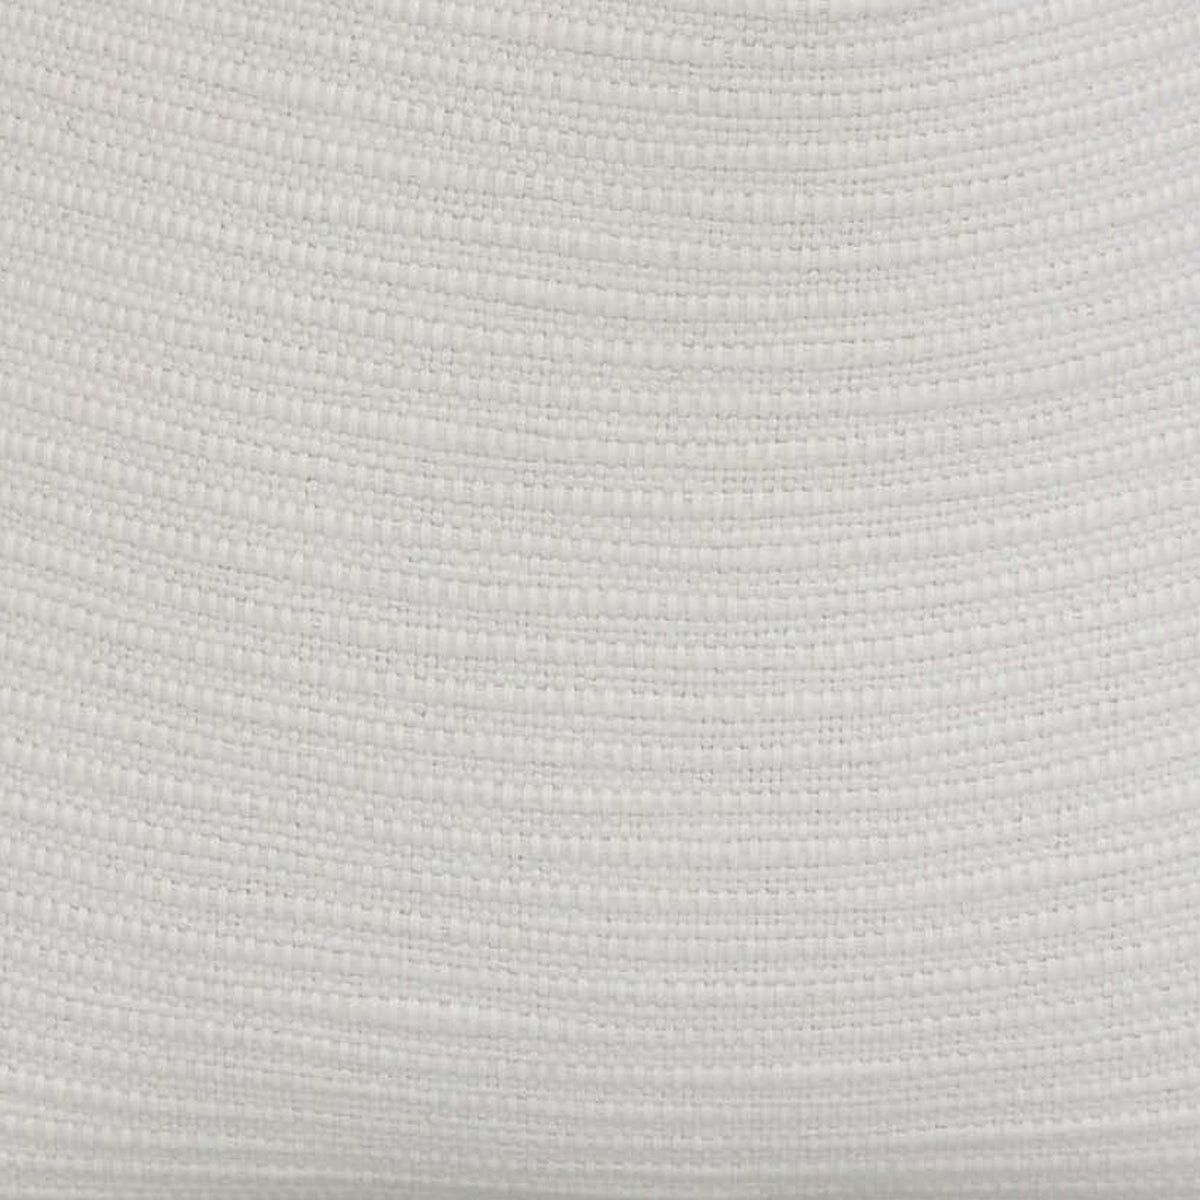 Jibari Textured White / 4x4 inch Fabric Swatch